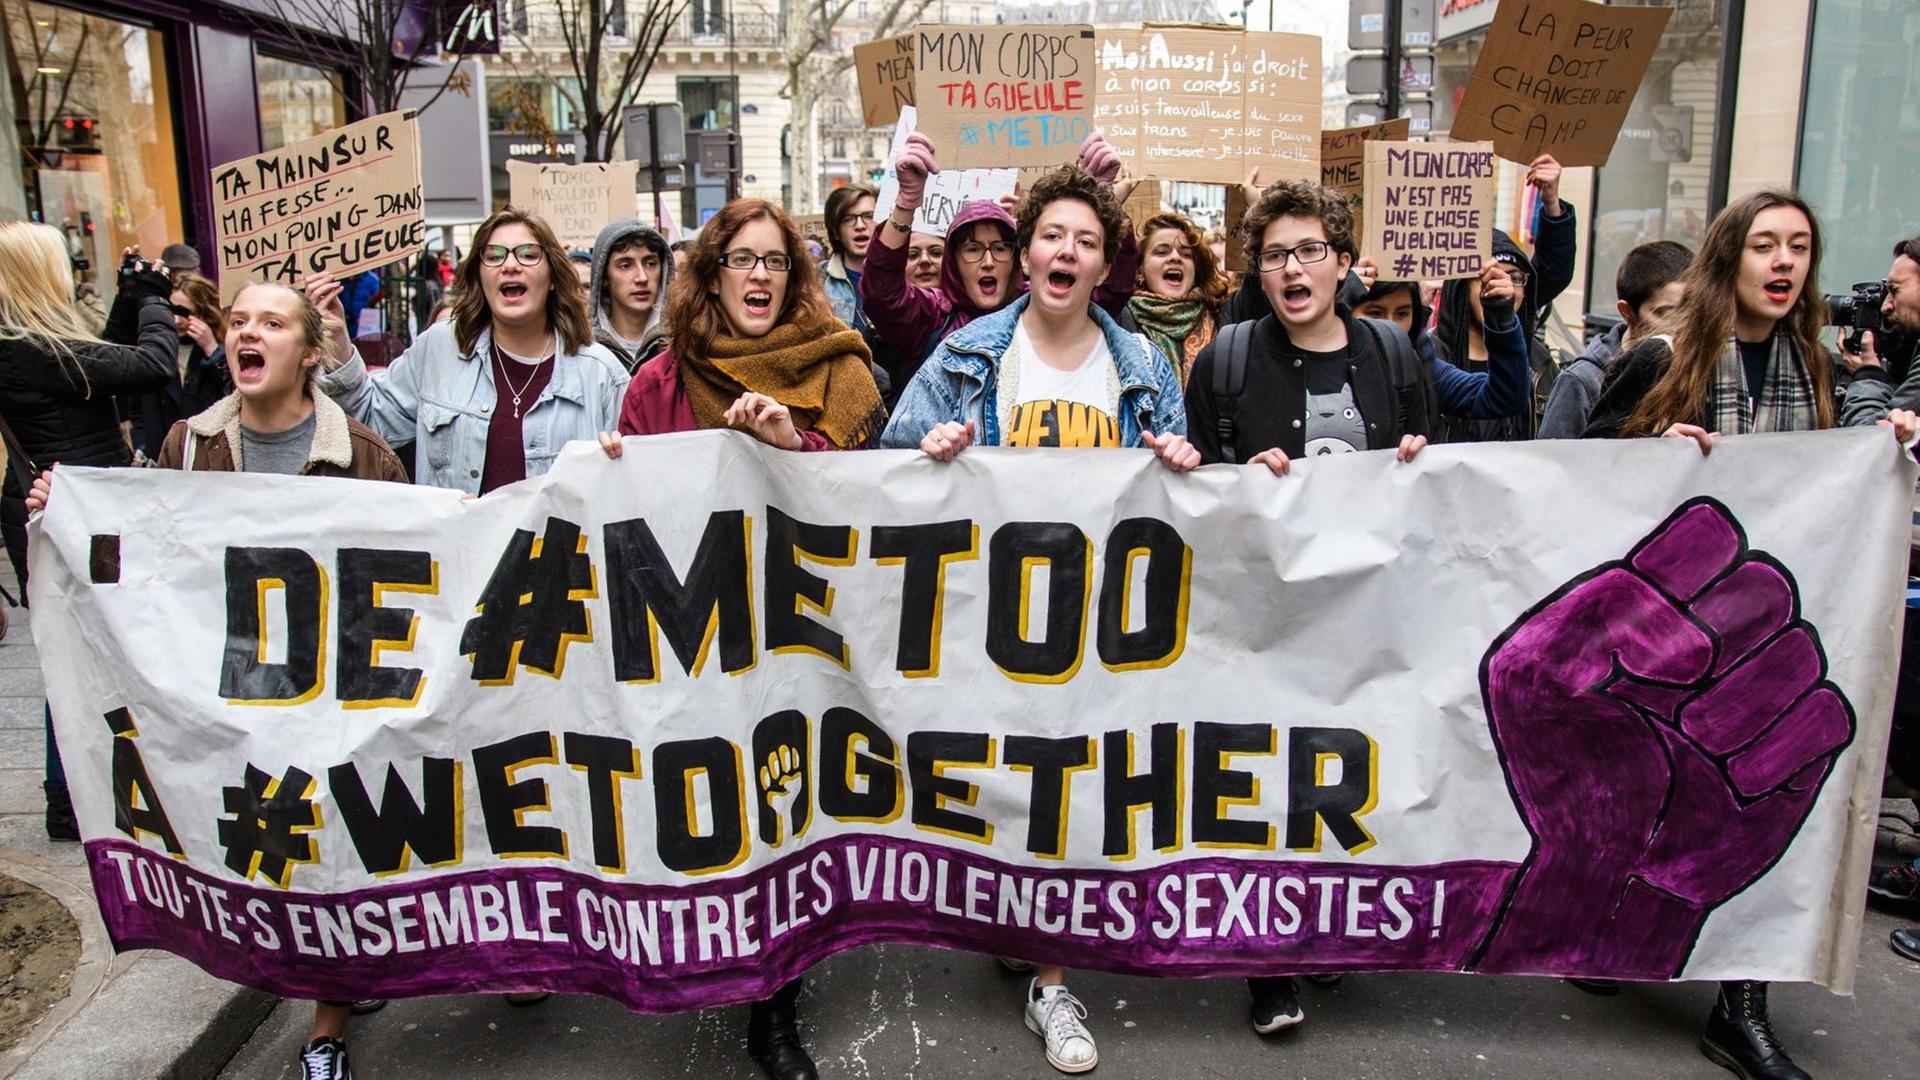 Eine Gruppe von Frauen bei einer #MeToo-Demonstration am Place de Republique in Paris. Vor sich her tragen sie ein Banner auf dem steht: De #metoo à #wetoogether.